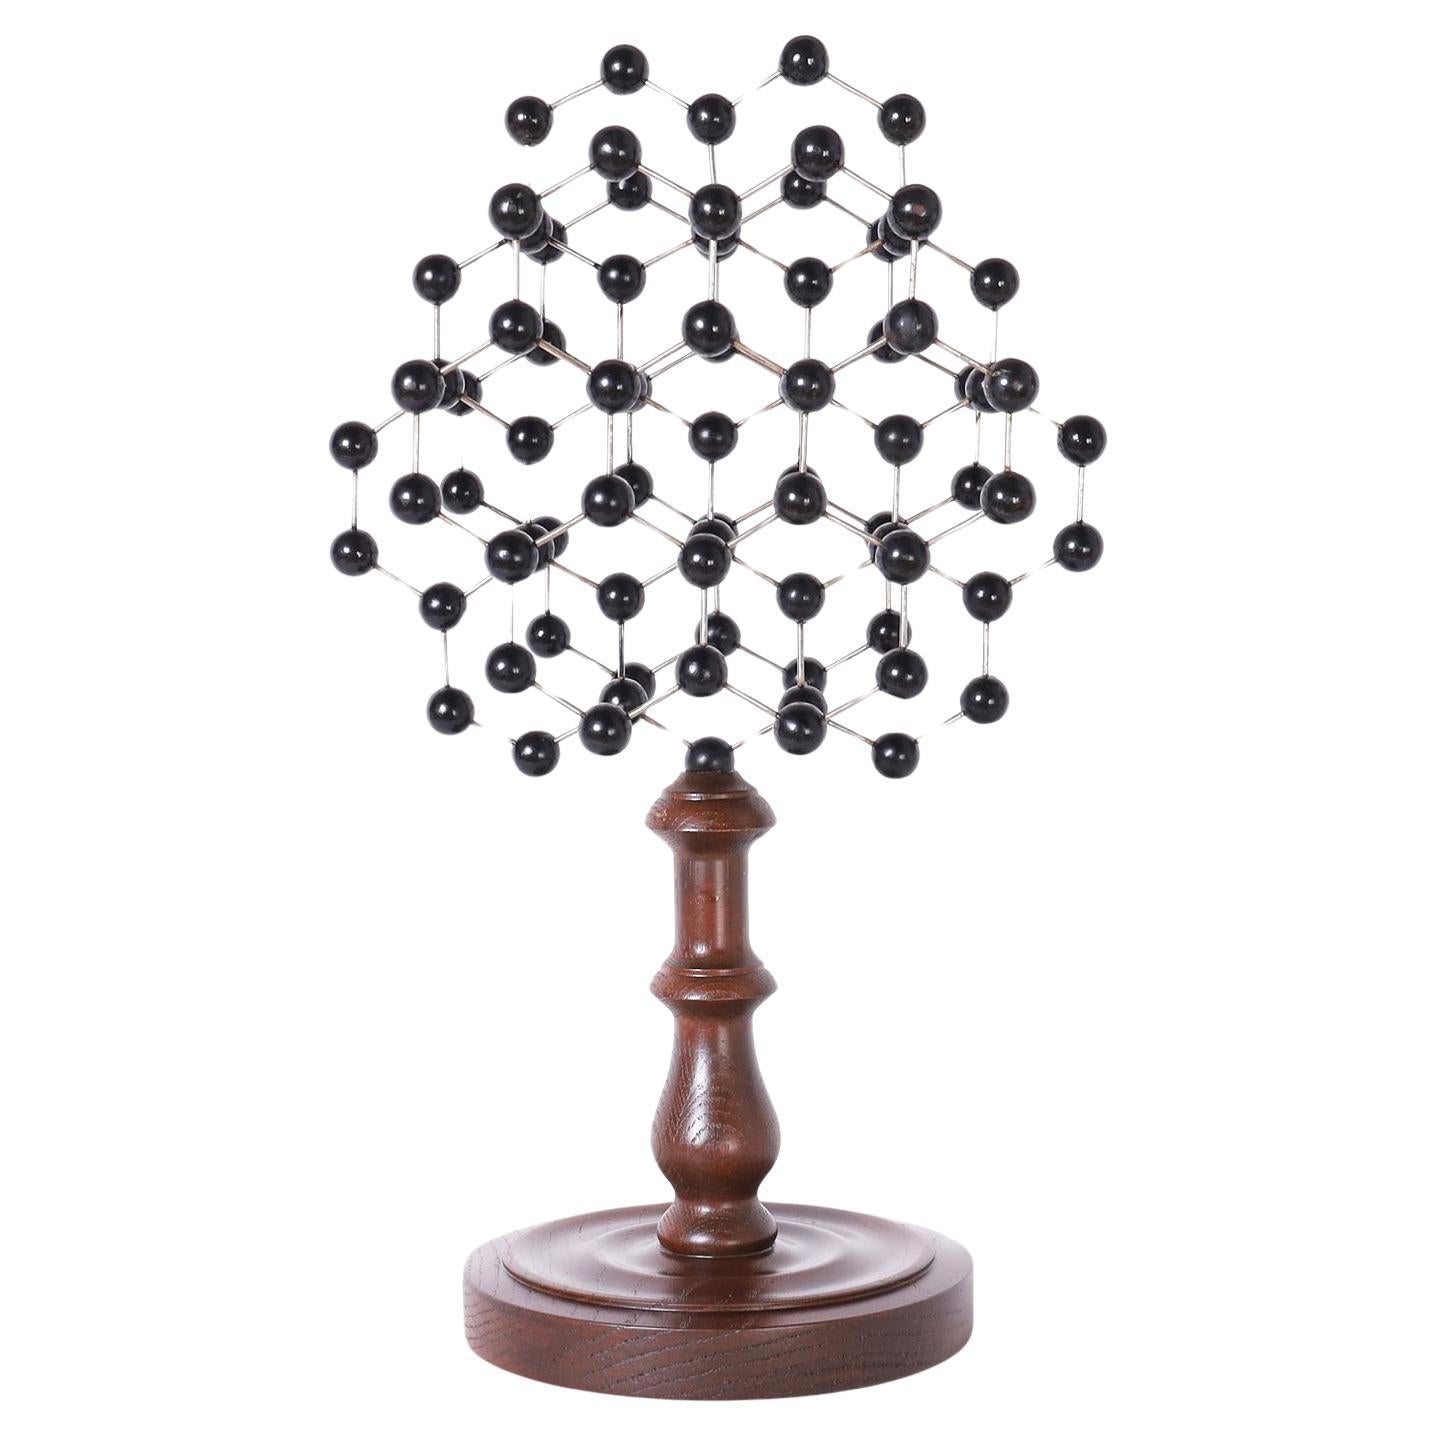 Modèle de structure moléculaire sur une base en bois